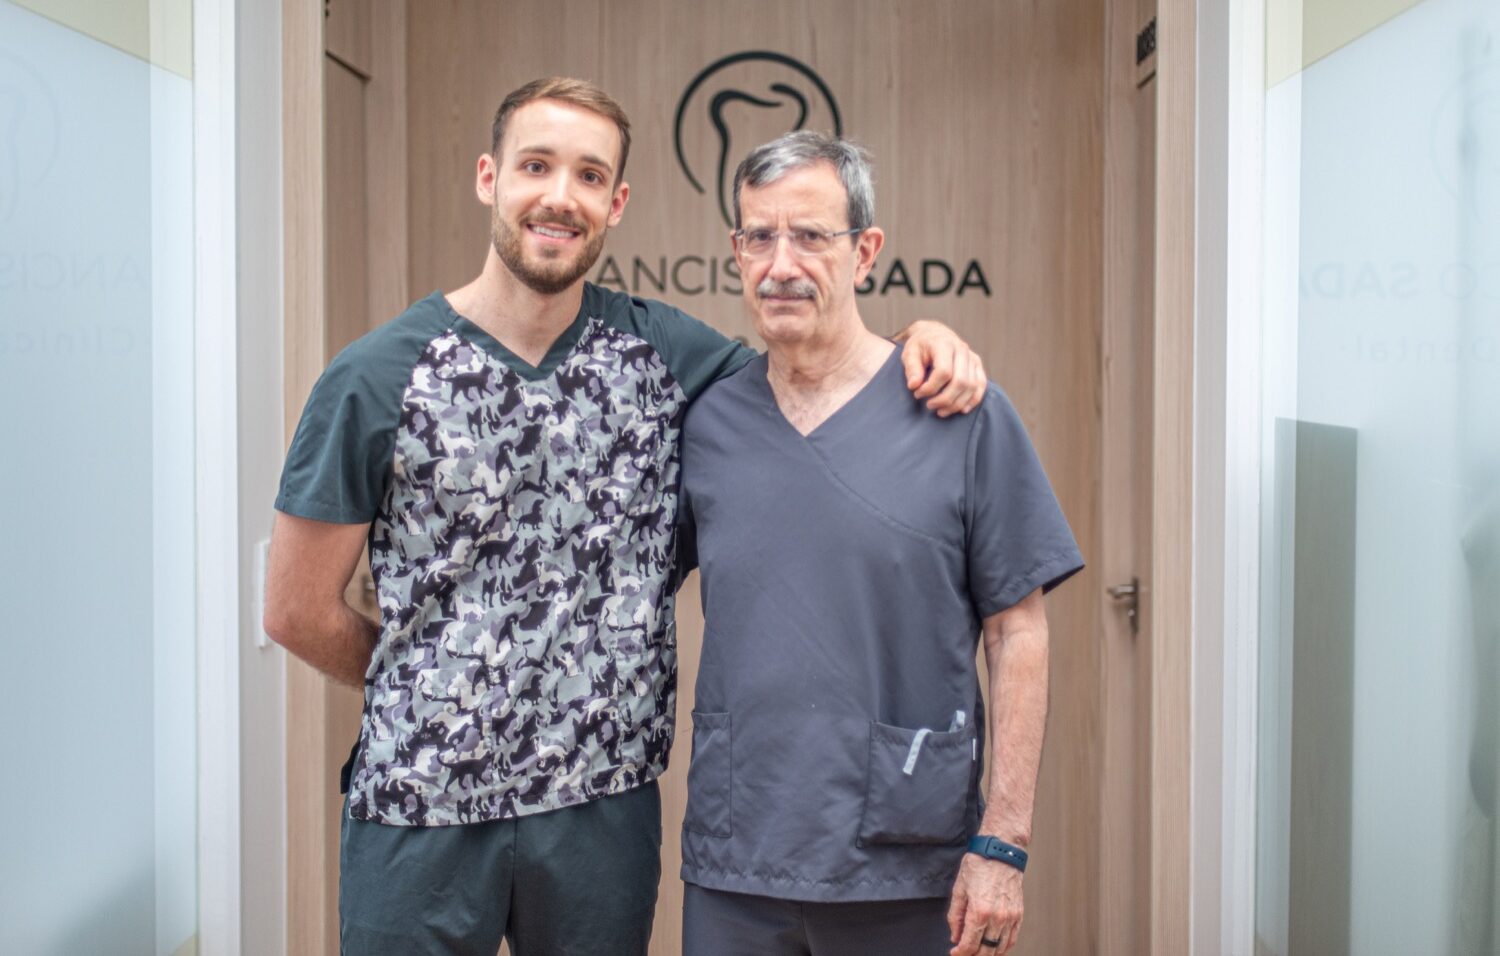 Clínica dental Francisco Sada